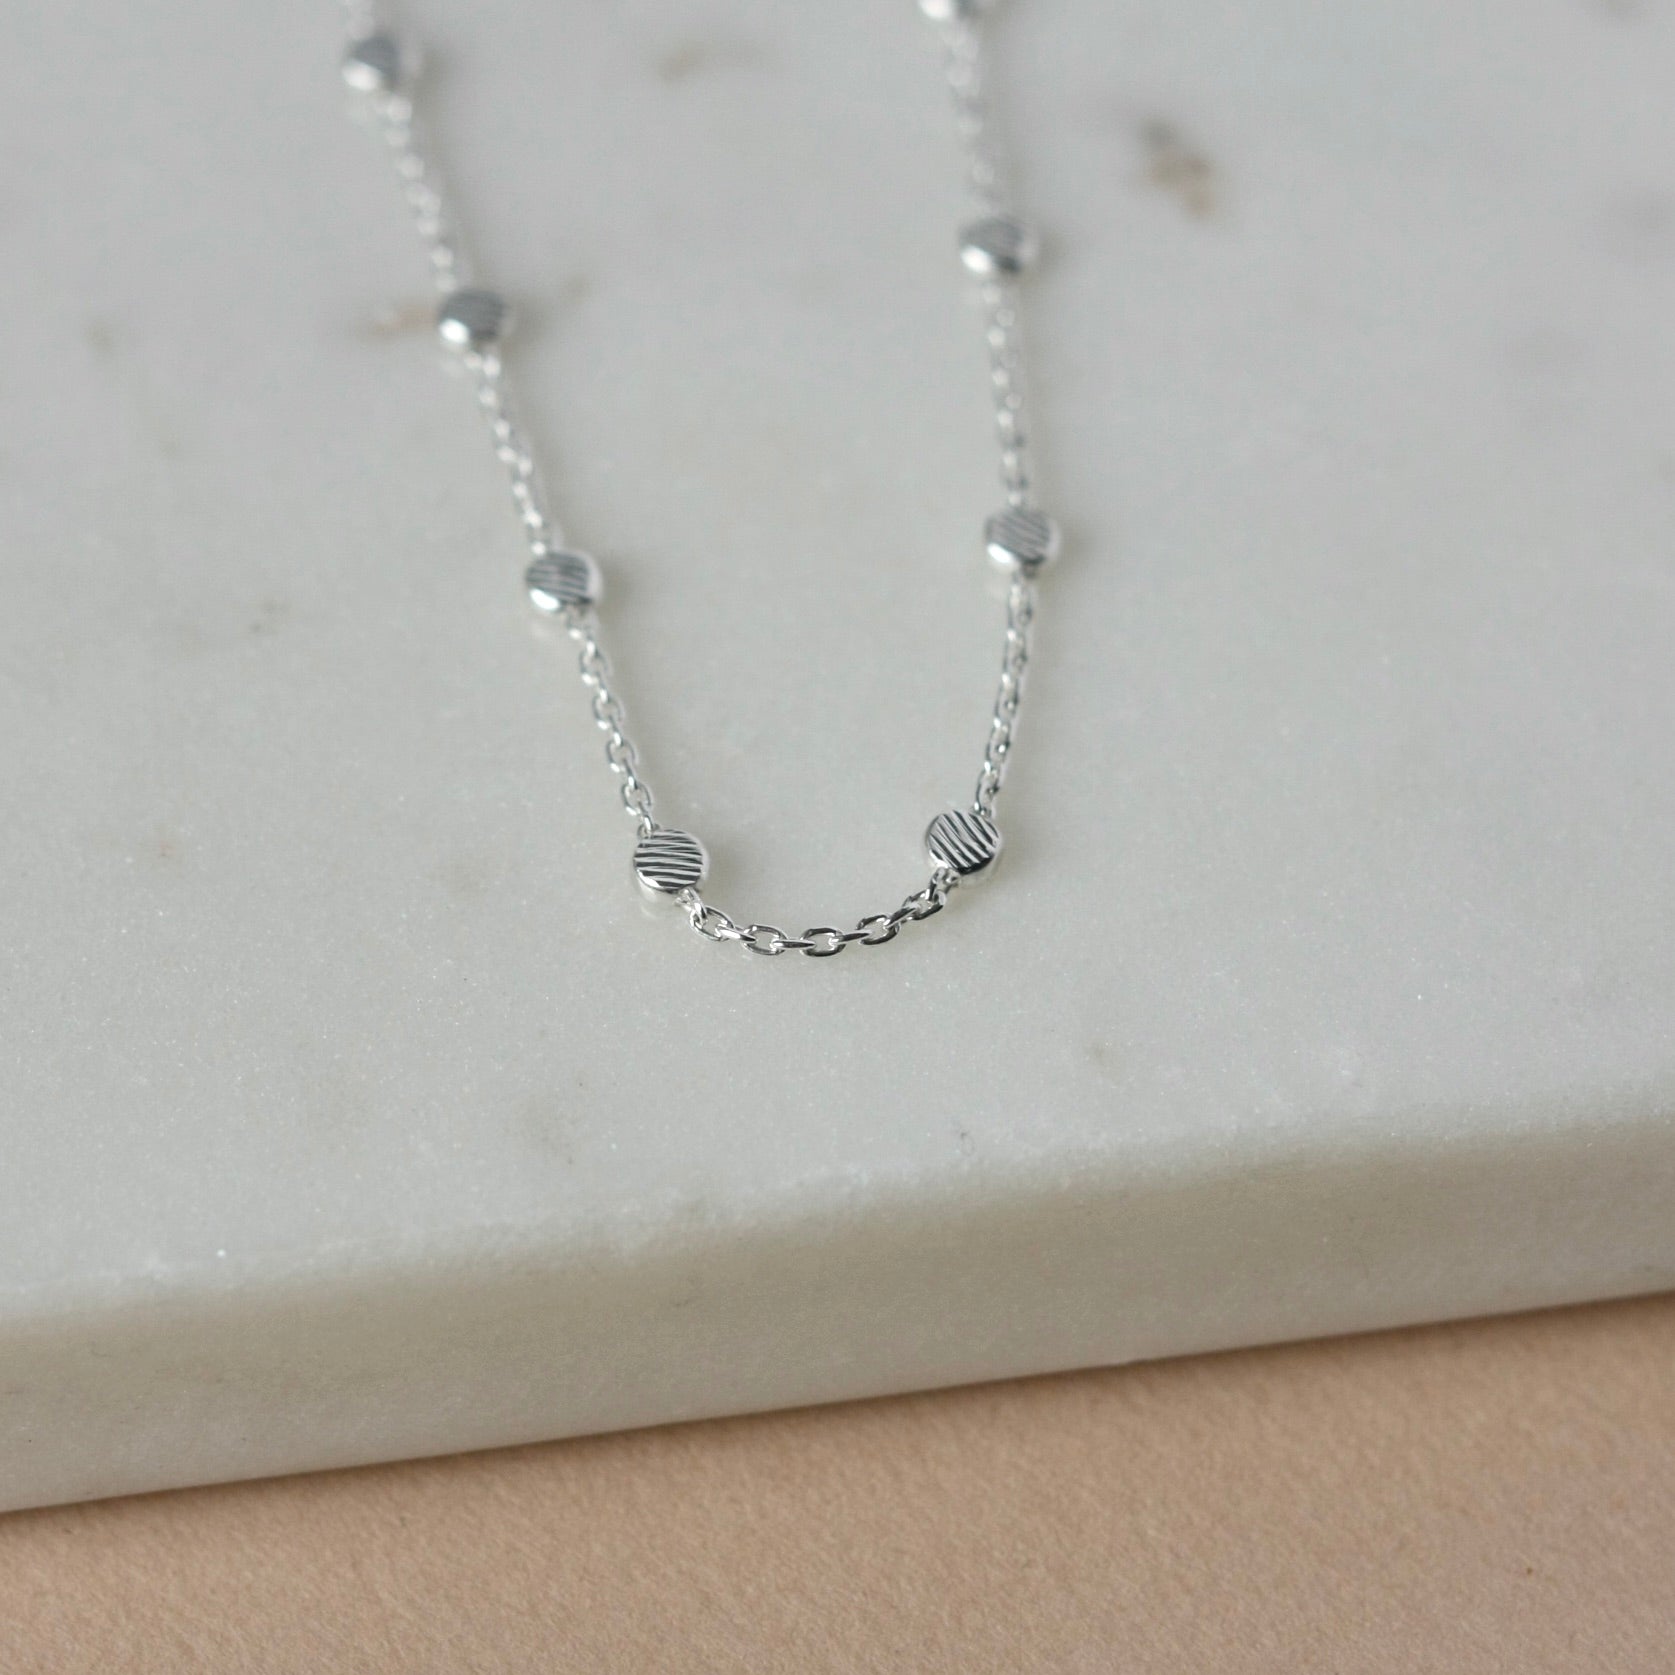 Dainty silver beaded necklace – Jewelry by Glassando